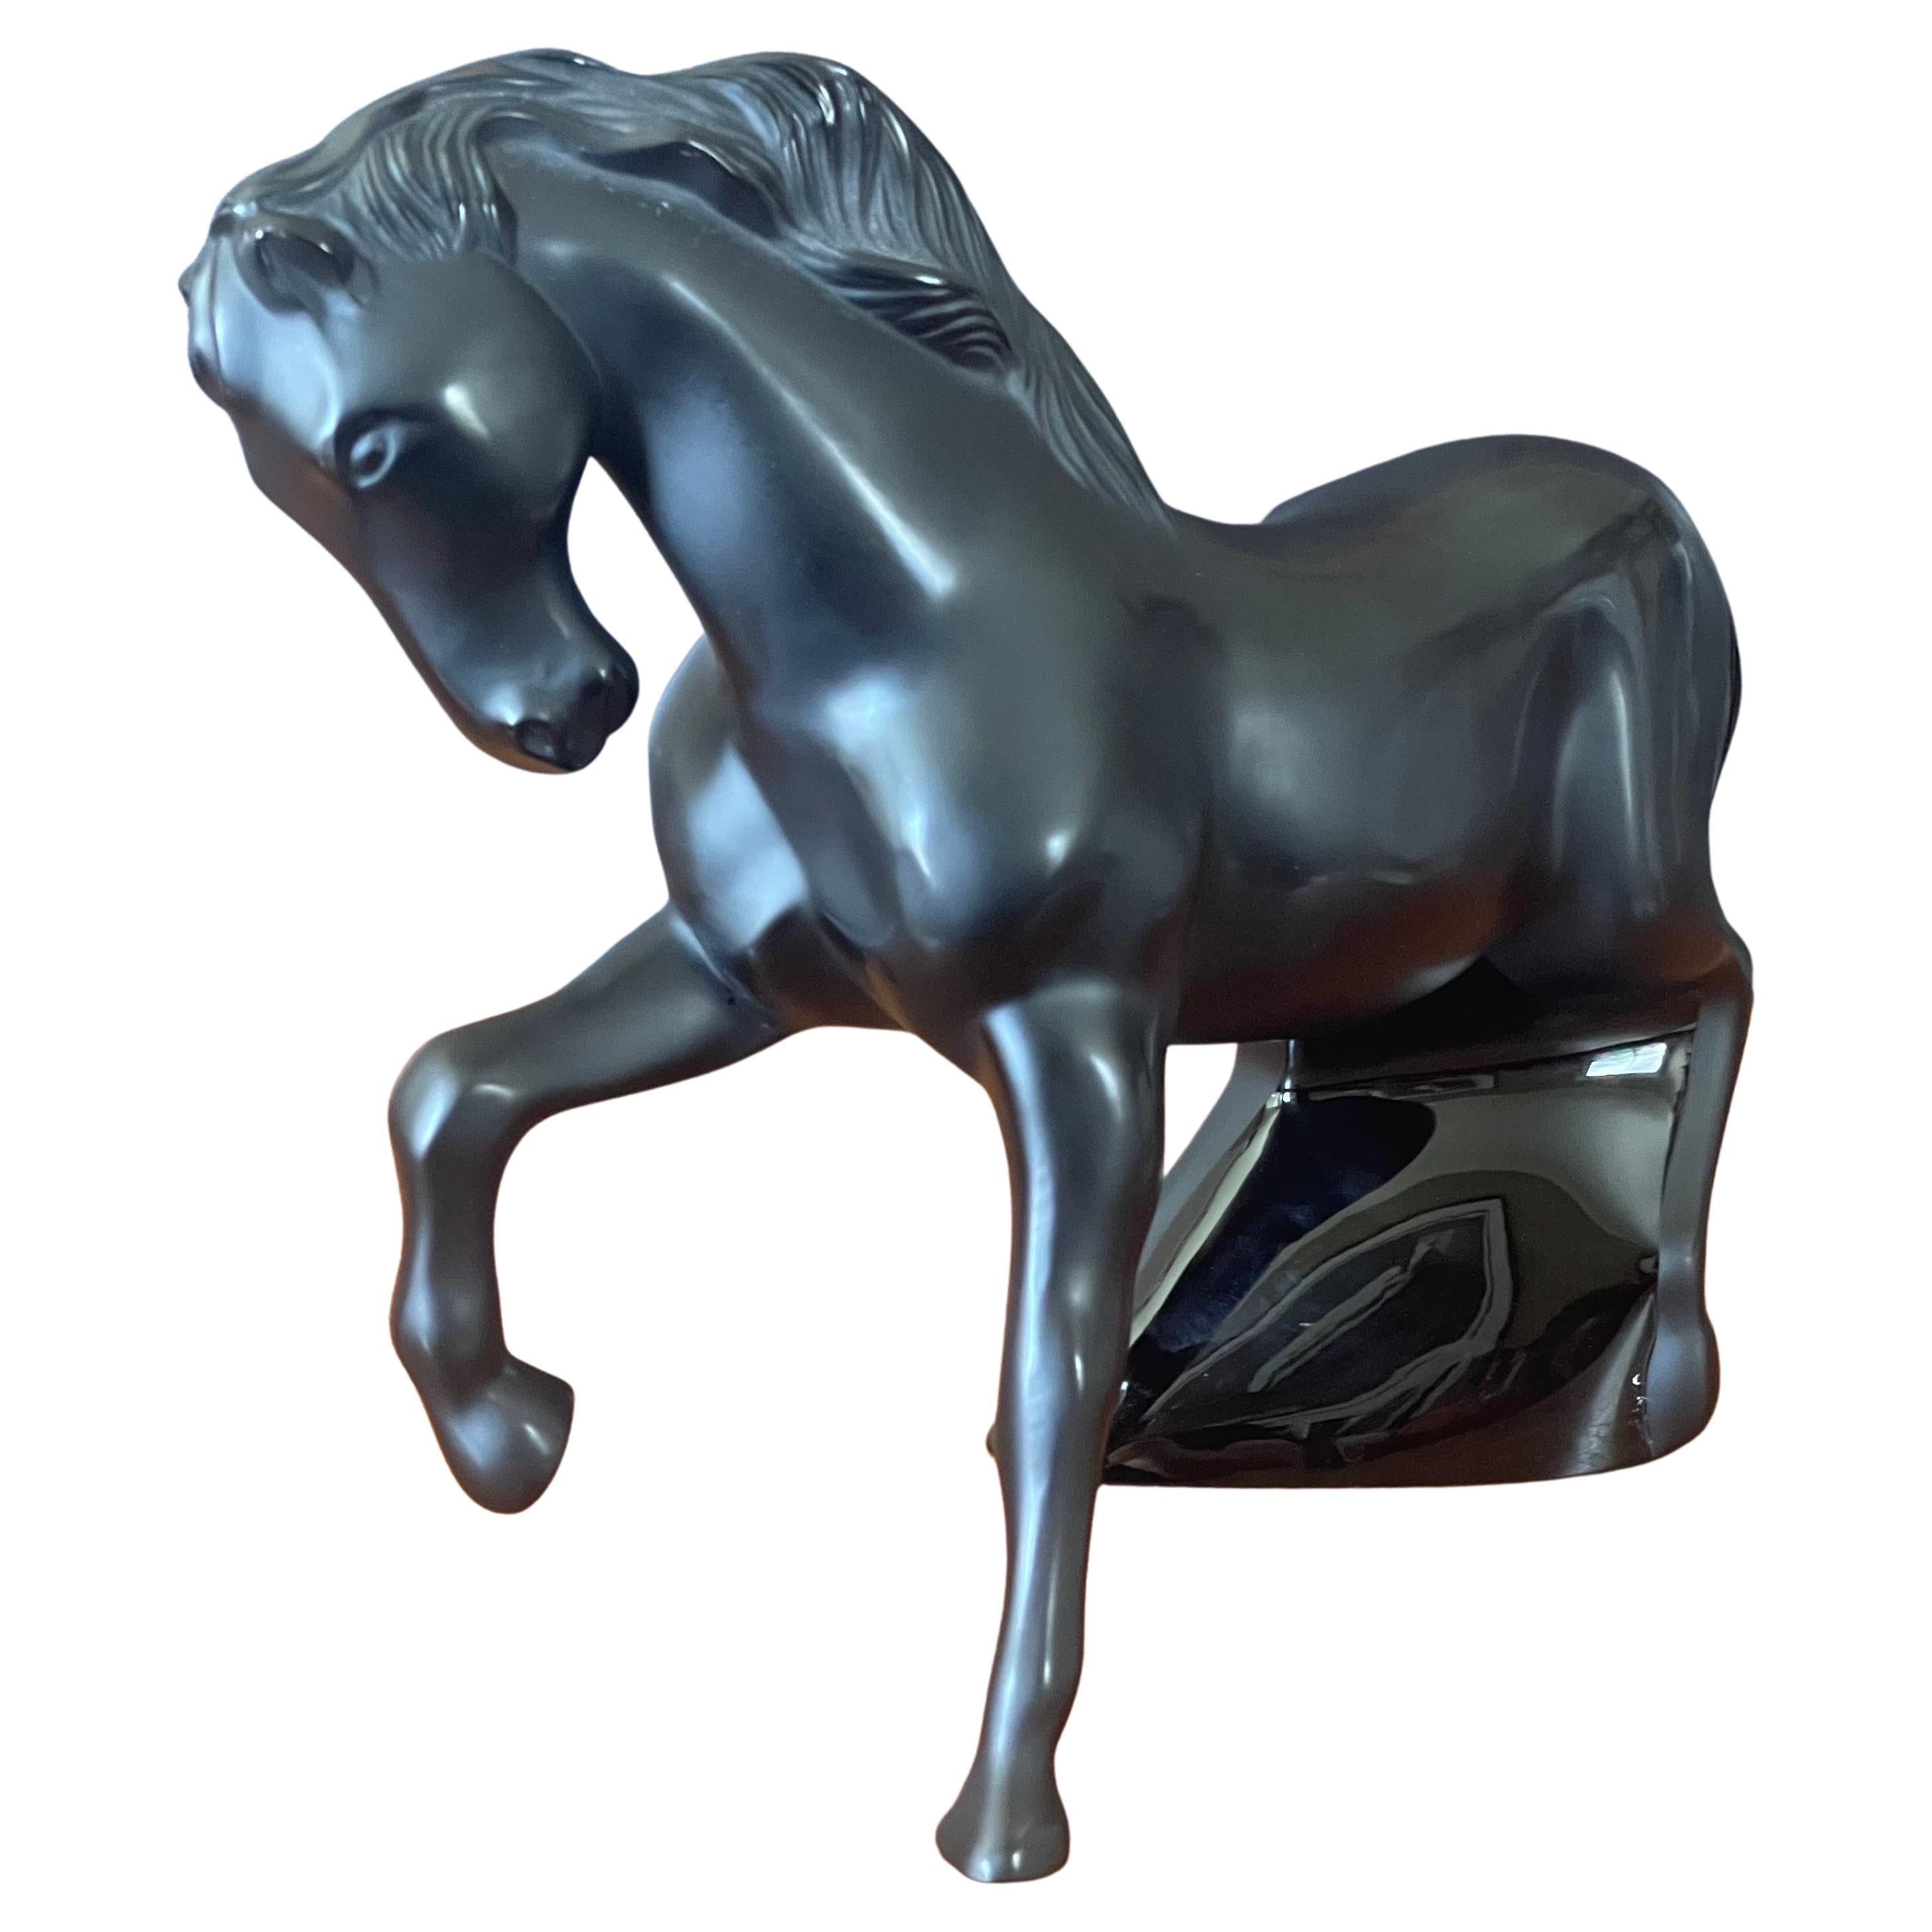 Sculpture rare Cheval Mistral Noir Horse / Stallion de Lalique of France